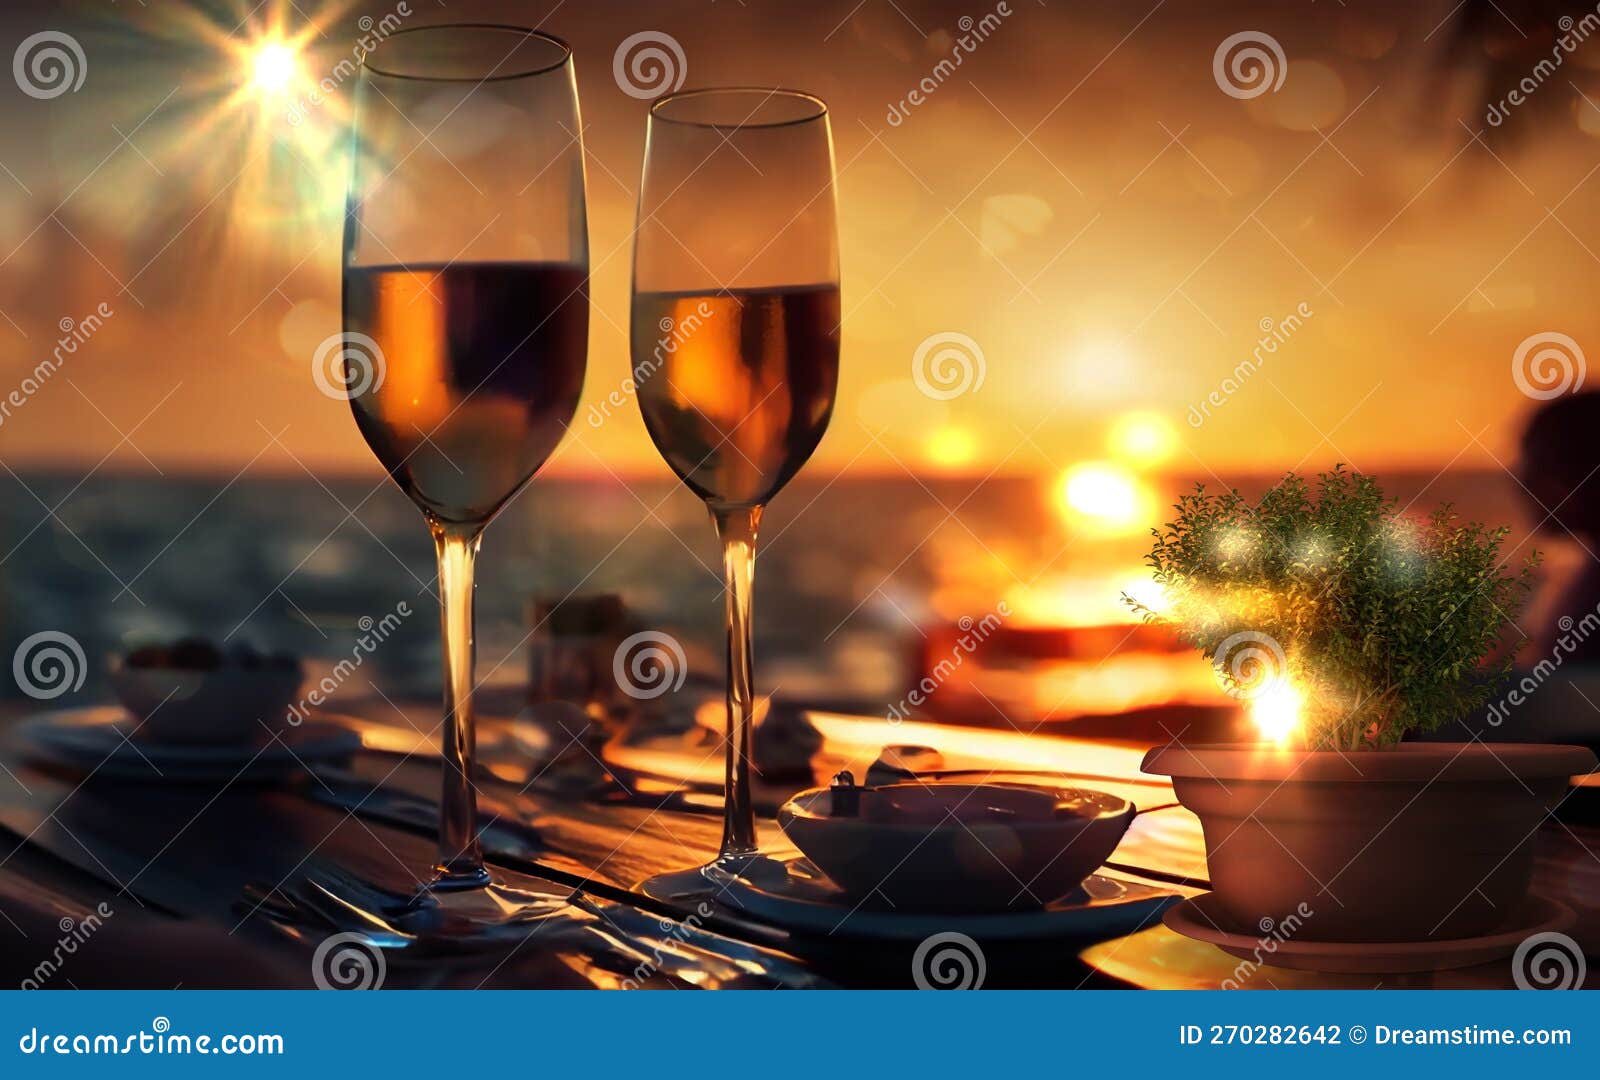 Dos copas de vino están sobre una mesa con una playa al fondo